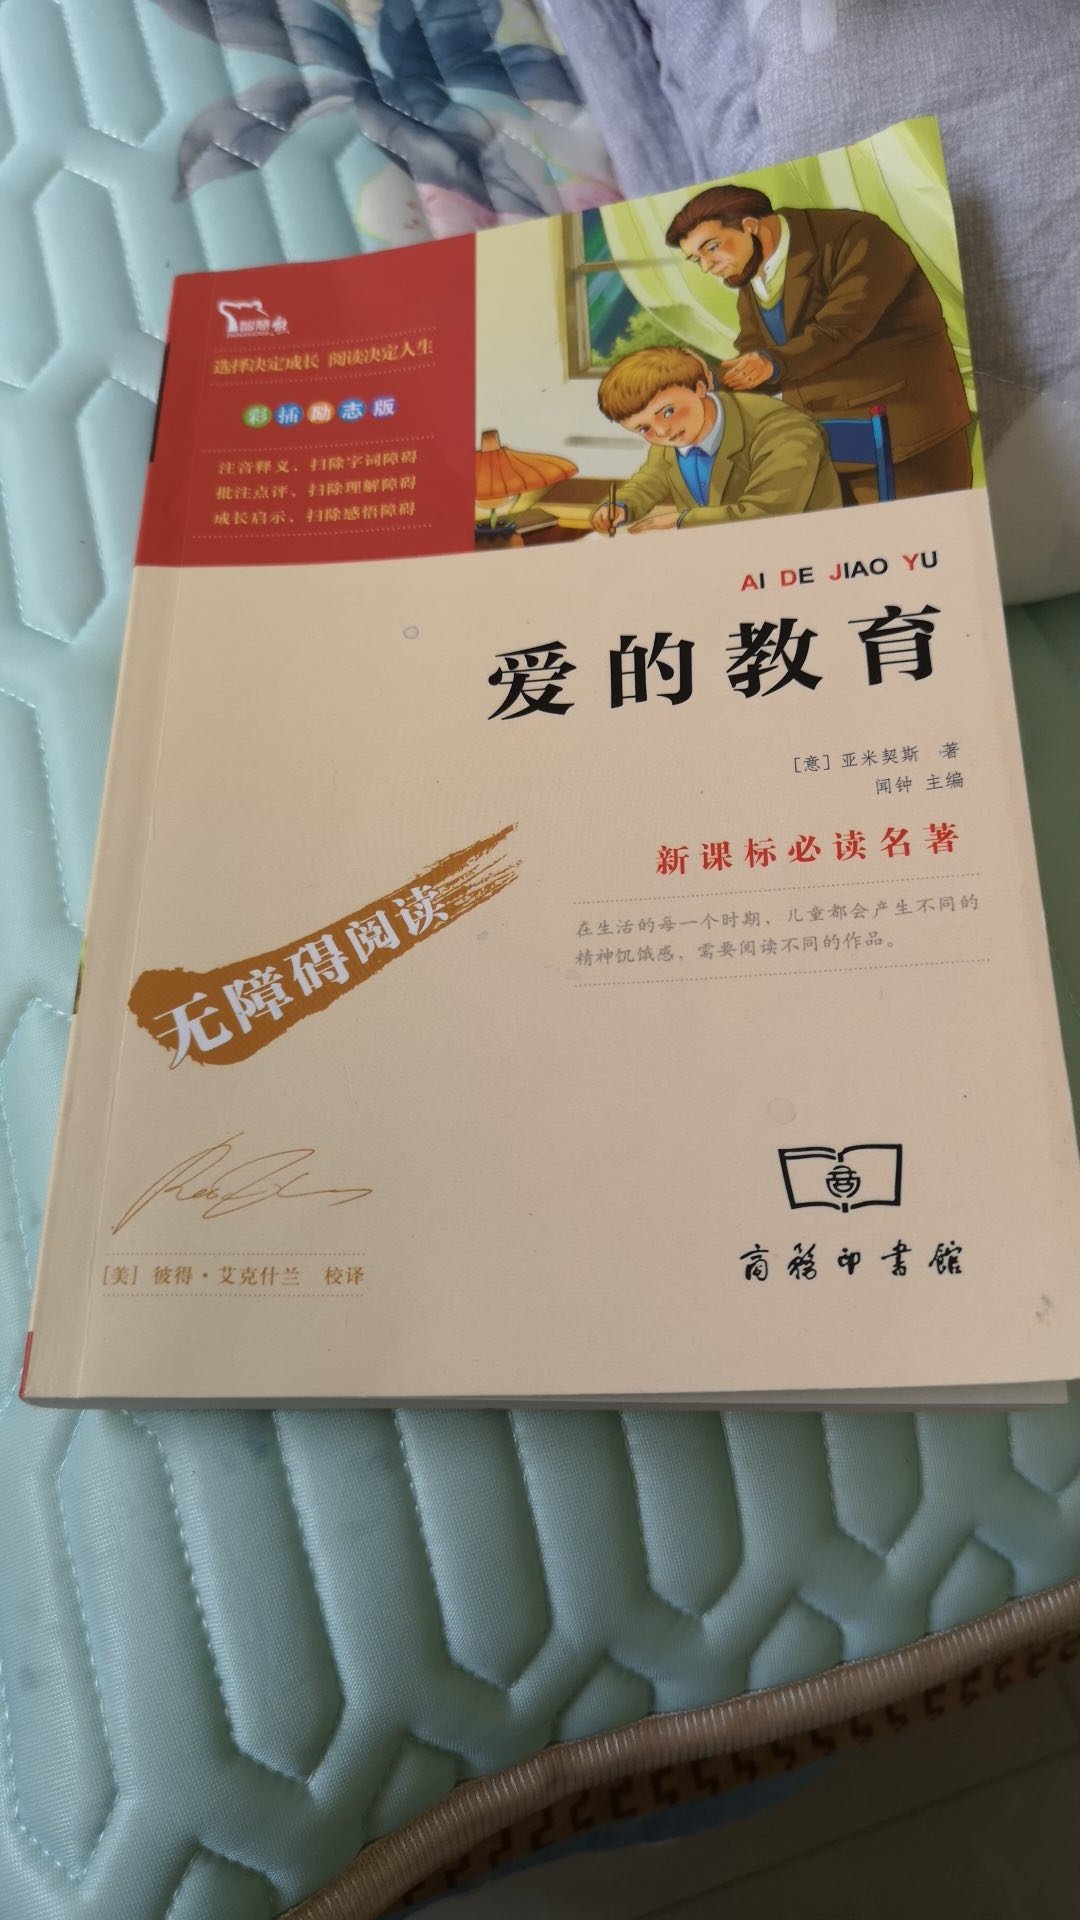 这本书是和窗边的小豆豆一起买的，看了一点儿，是教育孩子懂得感恩，知道自己在被爱着，也要用爱回报。还可以吧，就是毕竟是翻译过来的书，有文化的语言不如看中文原著的书流畅和更容易接受，总体满意，适合亲子阅读。